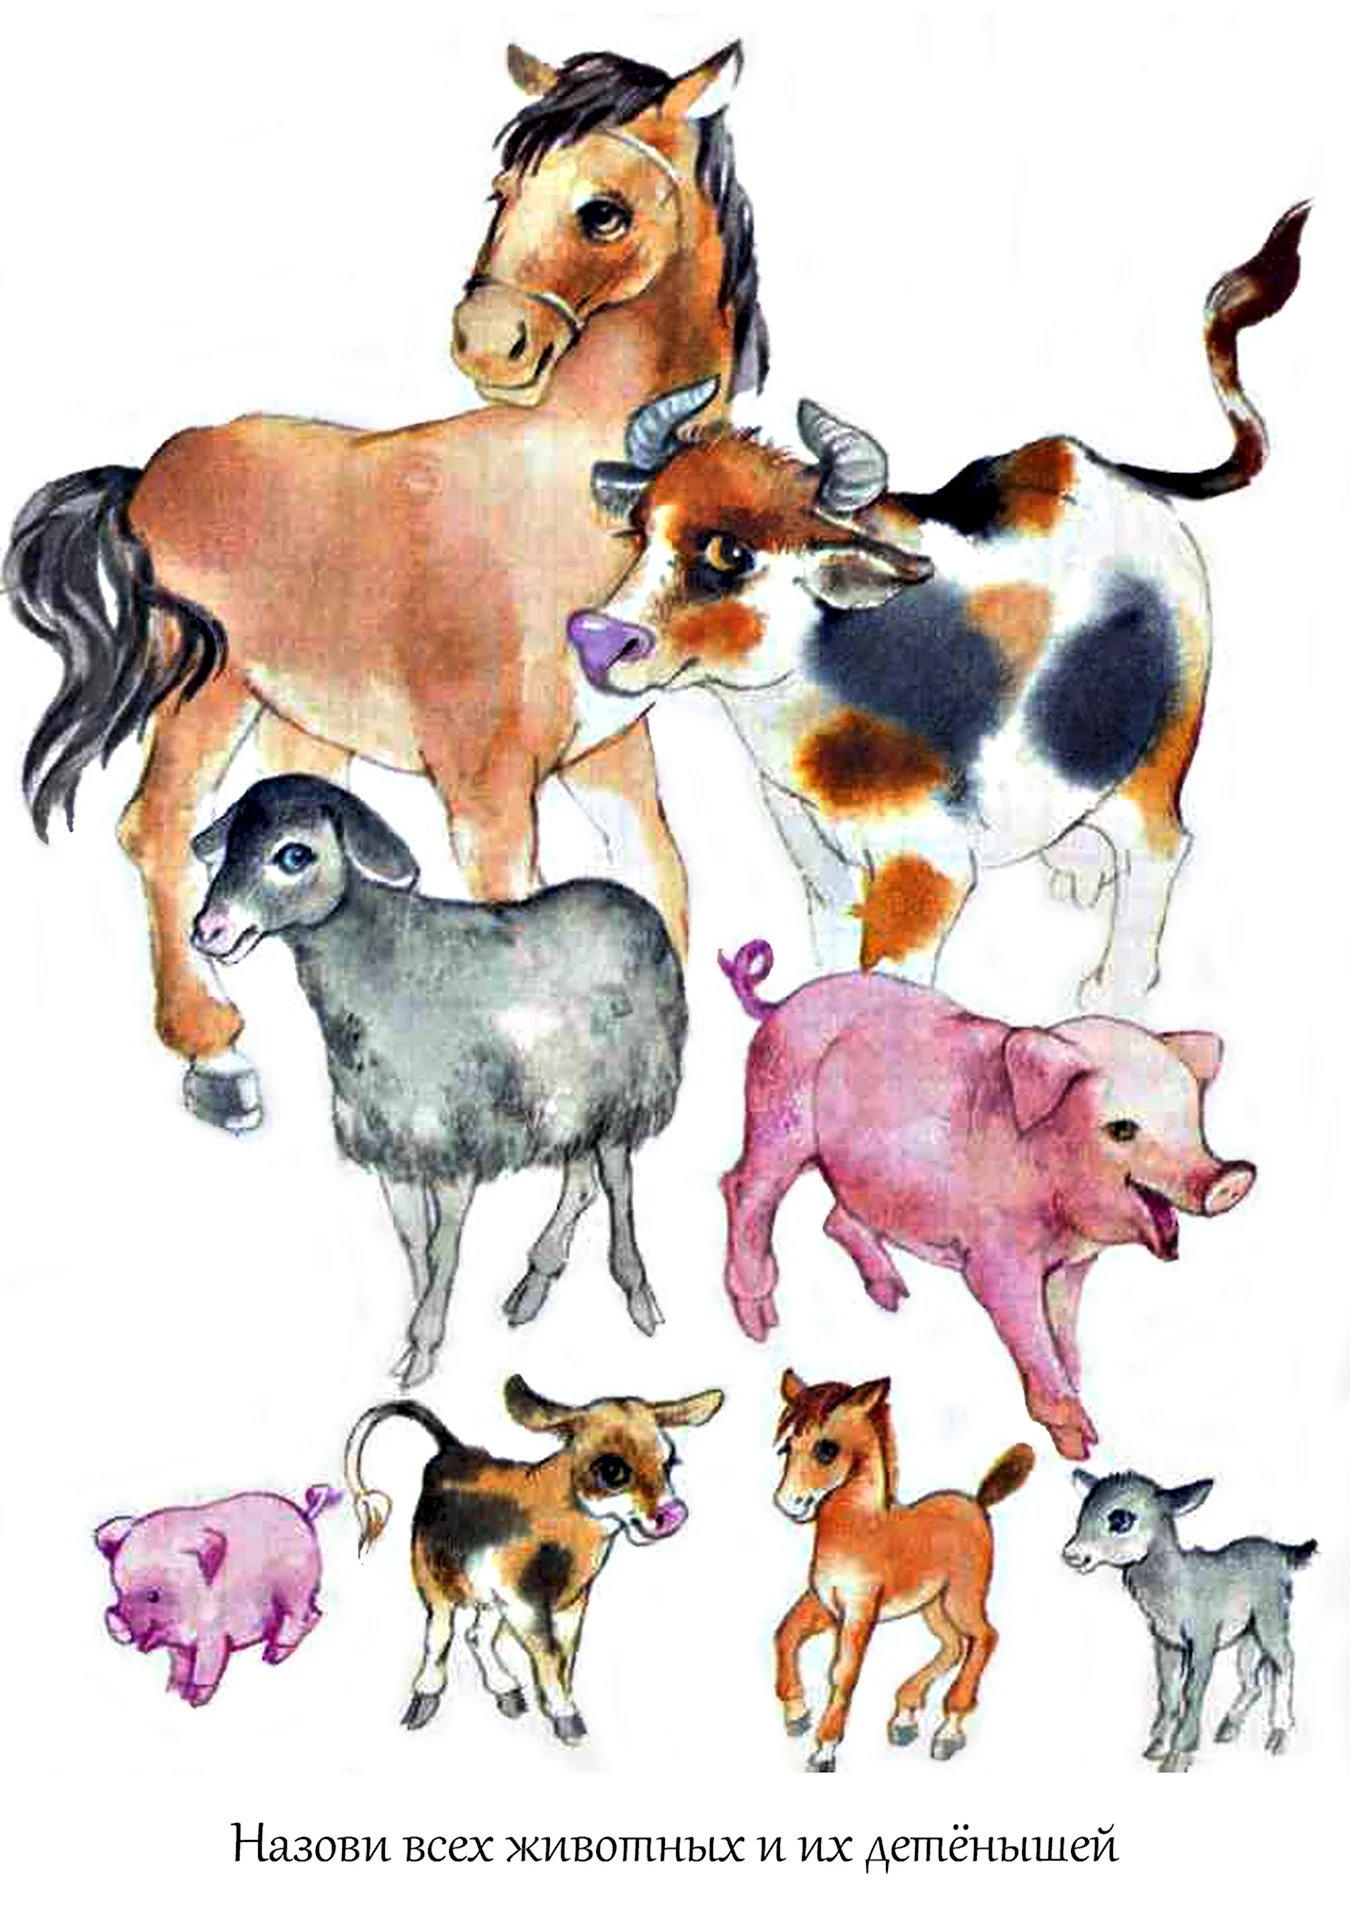 Иллюстрации с домашними животными